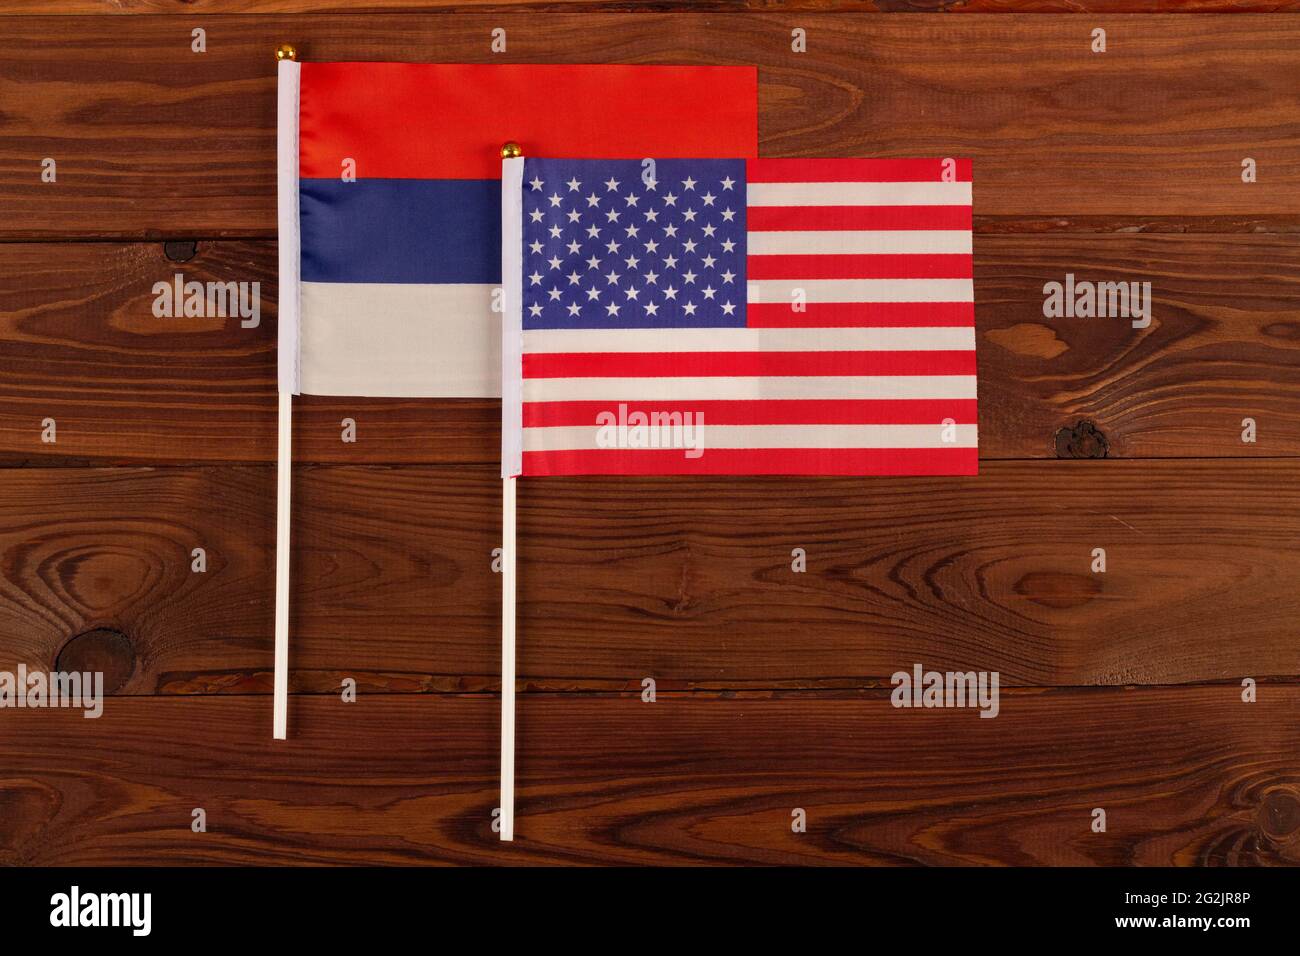 Flagge der USA auf dem Hintergrund der Flagge Russlands. USA vs. Russland. Treffen der Präsidenten der Vereinigten Staaten und Russlands. Spannungen in den Beziehungen Stockfoto